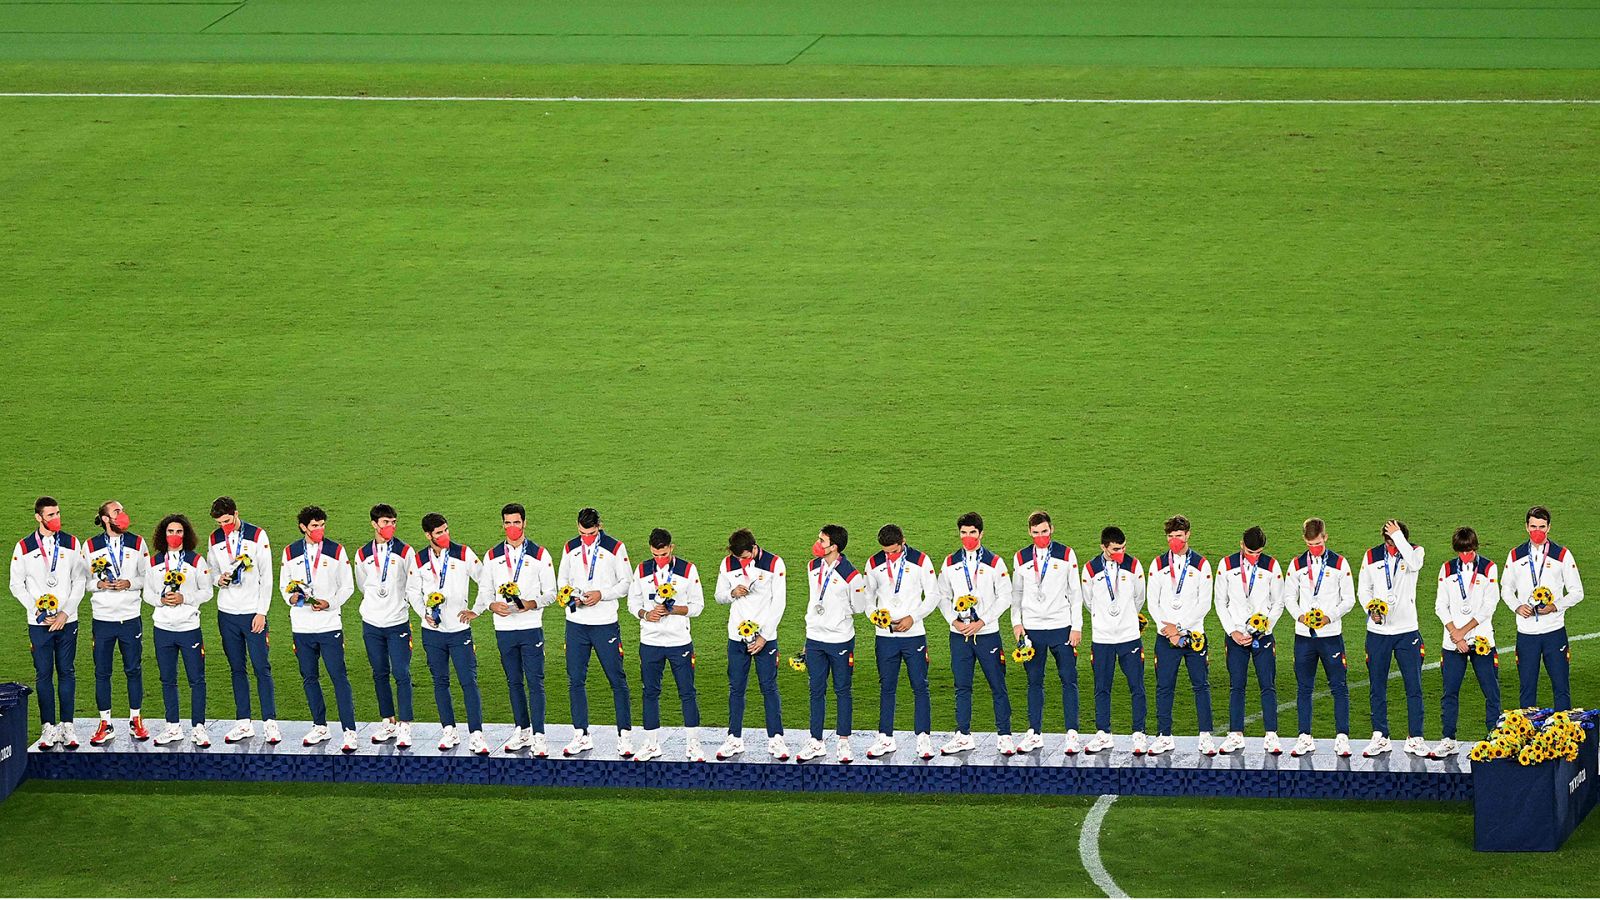 Tokyo 2020 - Fútbol Masculino. Medallas - Ver ahora